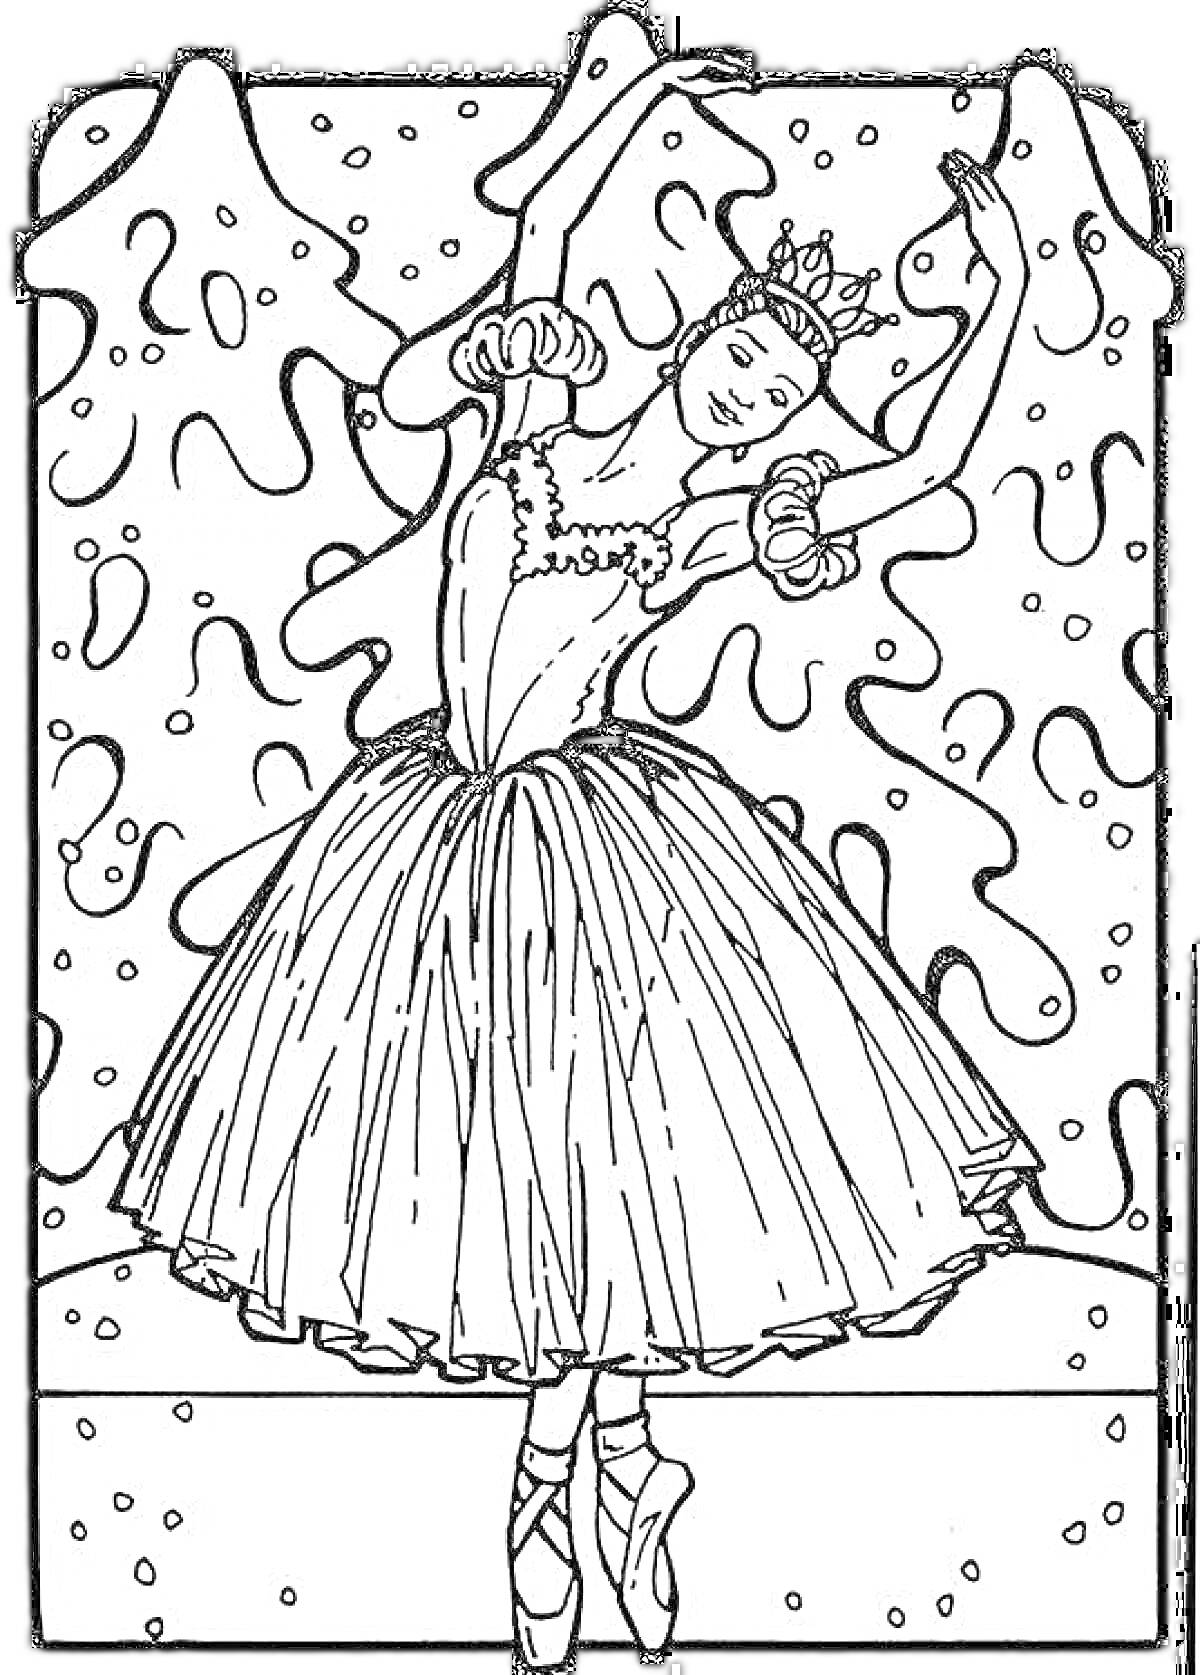 Раскраска Принцесса-балерина в короне в балетной пачке на фоне рождественской ели